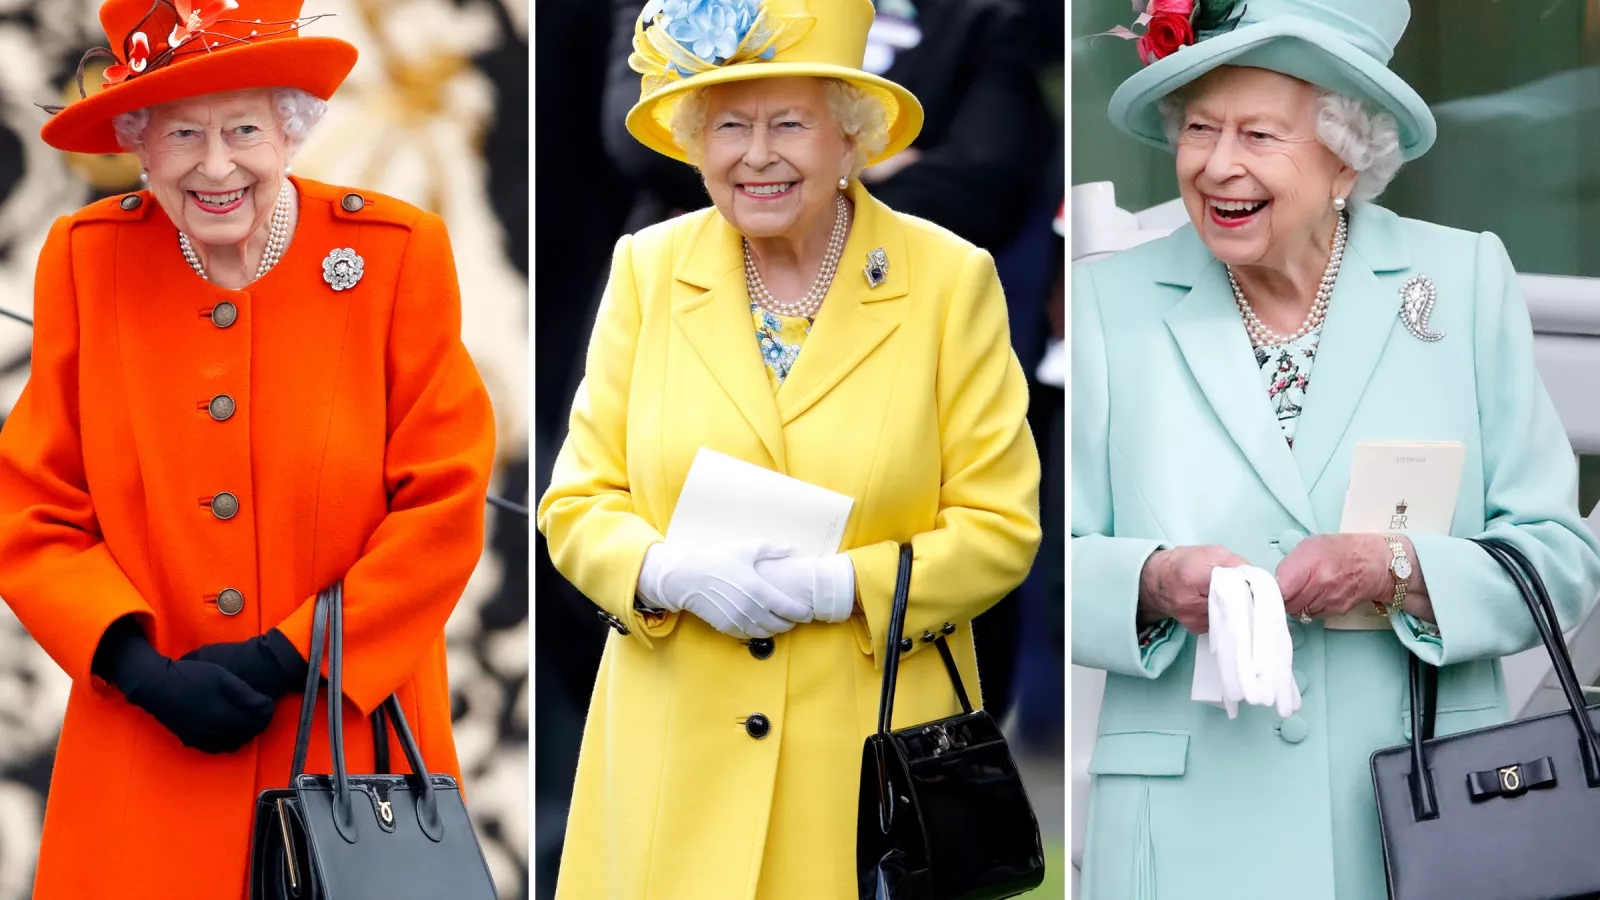 Queen Elizabeth's Favorite Handbag Brand is Launer - The Queen's Best  Accessory